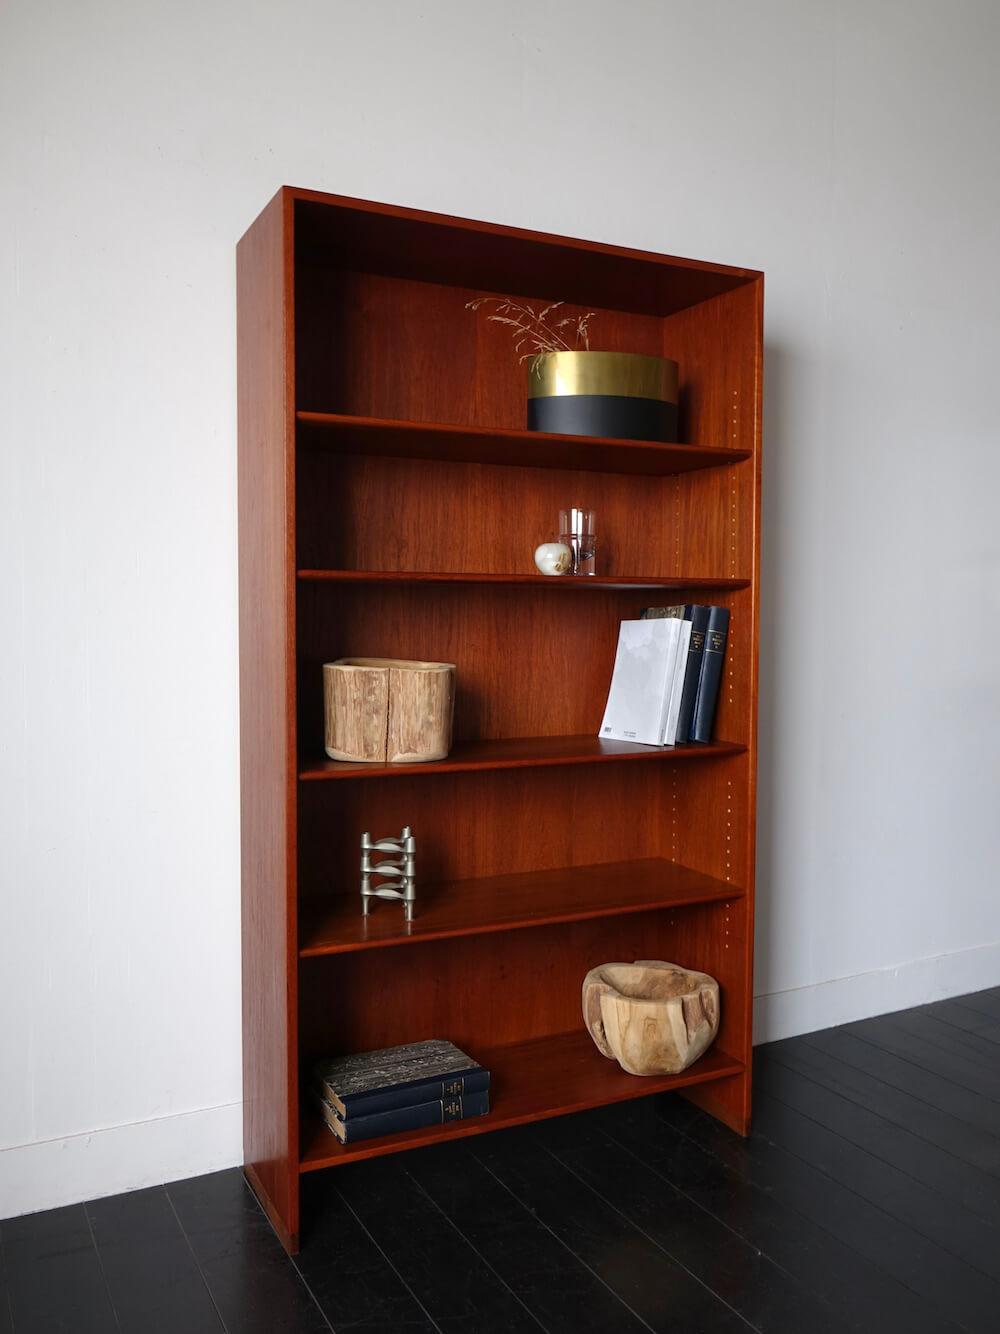 RY8 Bookshelf in teak by Hans J. Wegner for RY mobler